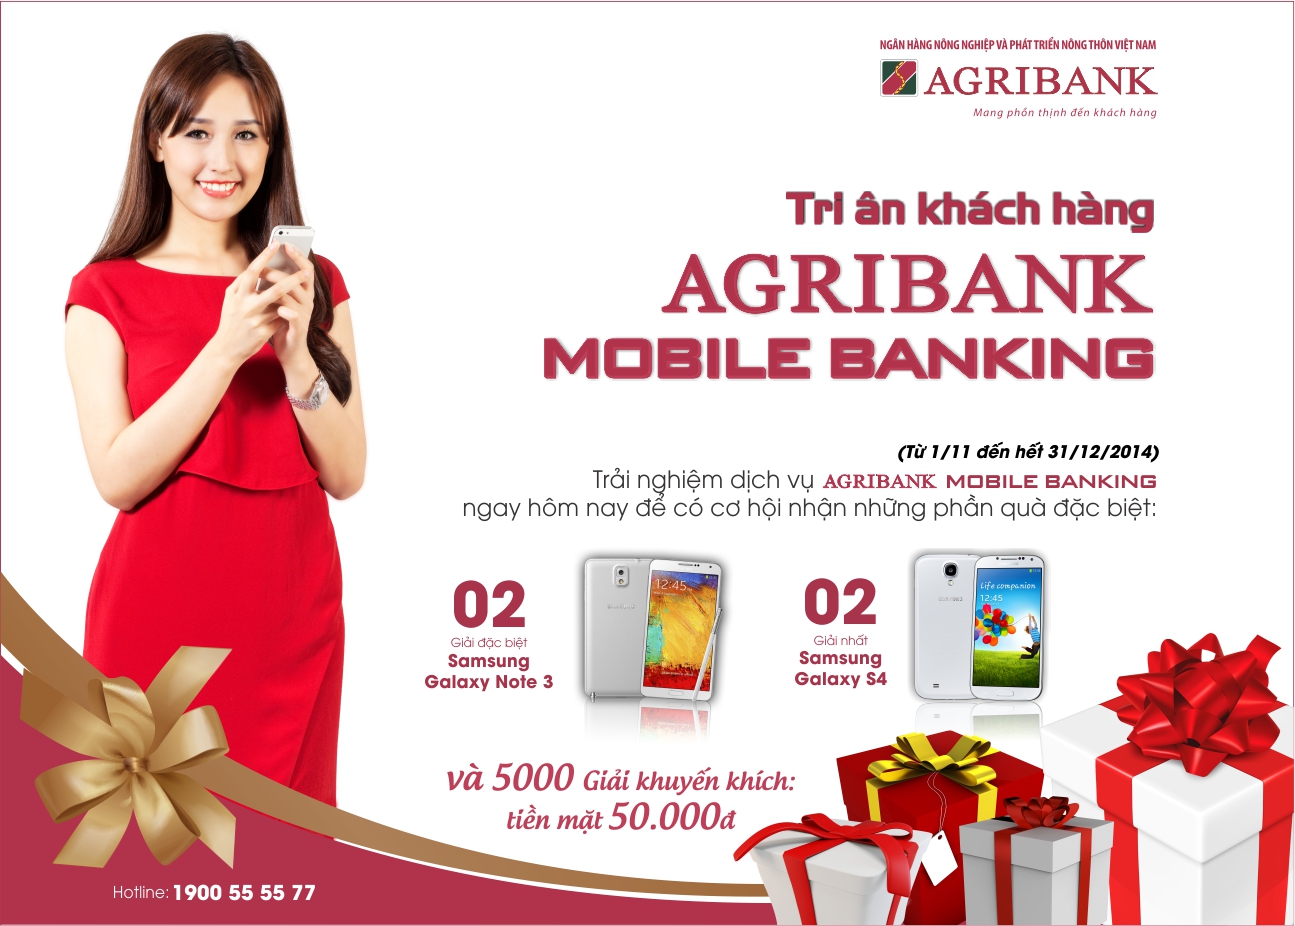 Danh sách khách hàng trúng giải may mắn chương trình Tri ân khách hàng Agribank Mobile Banking